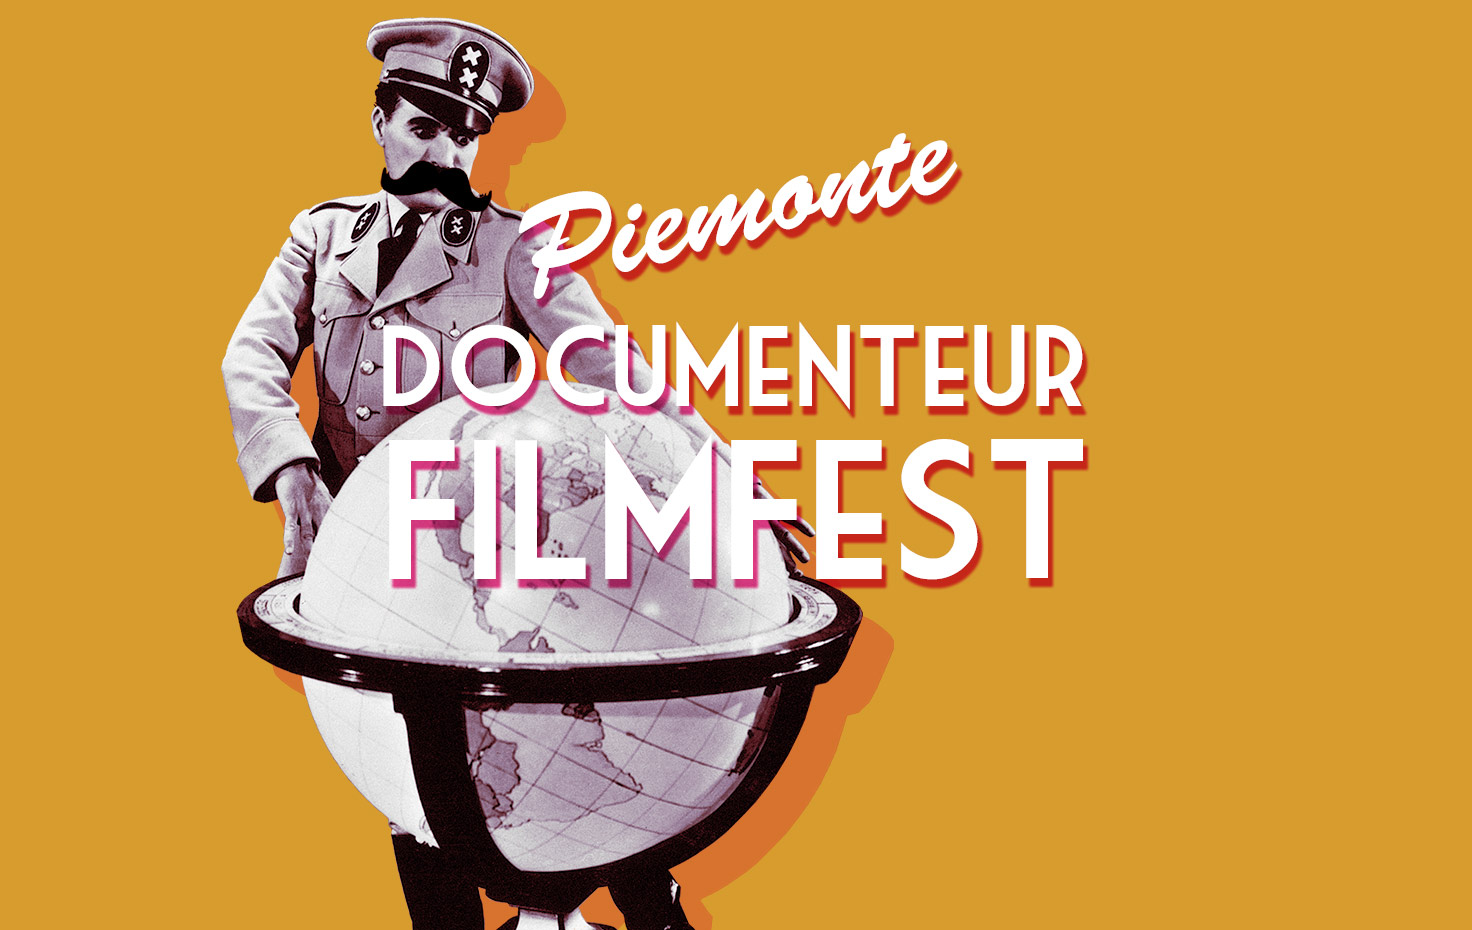 Piemonte Documenteur FilmFest